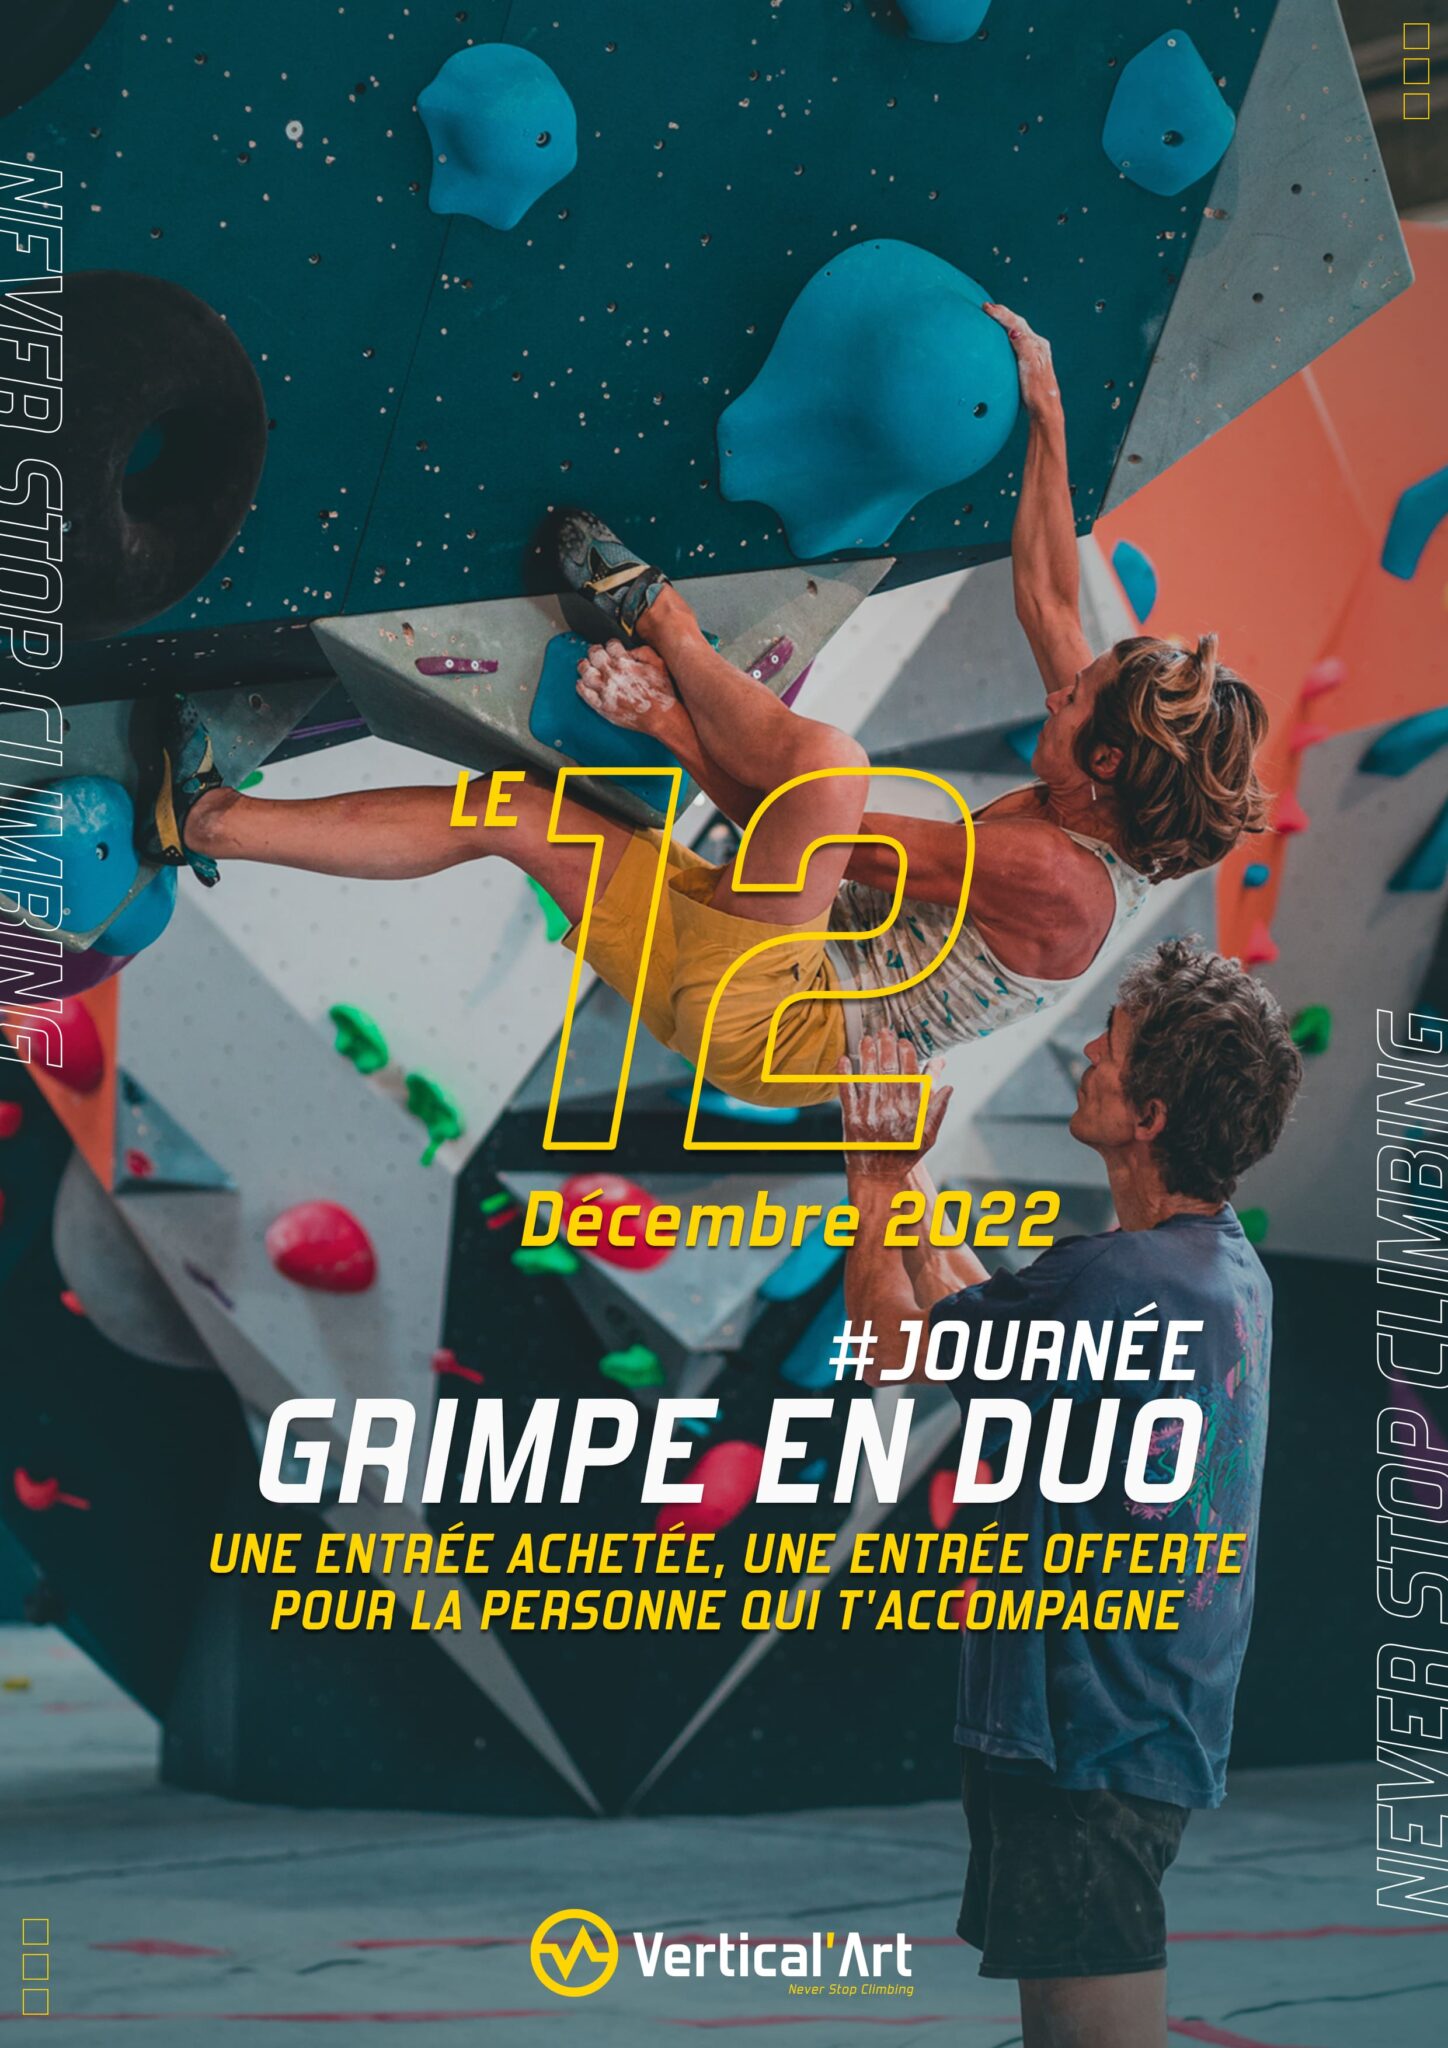 Grimpe en duo Vertical'Art Orléans 12 décembre 2022 une entrée achetée, une offerte